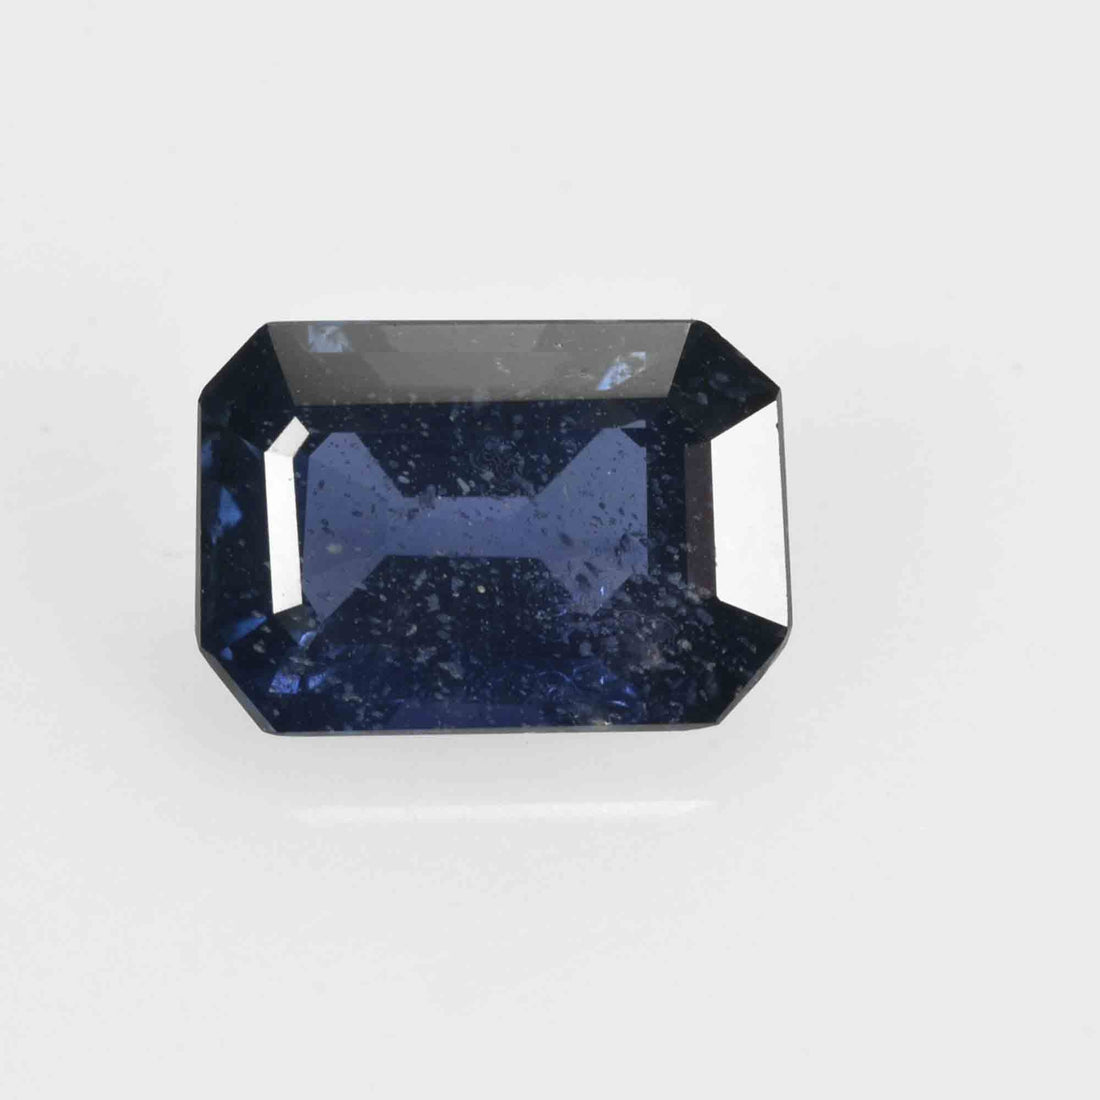 0.78 Cts Natural Blue Sapphire Loose Gemstone Cushion Cut